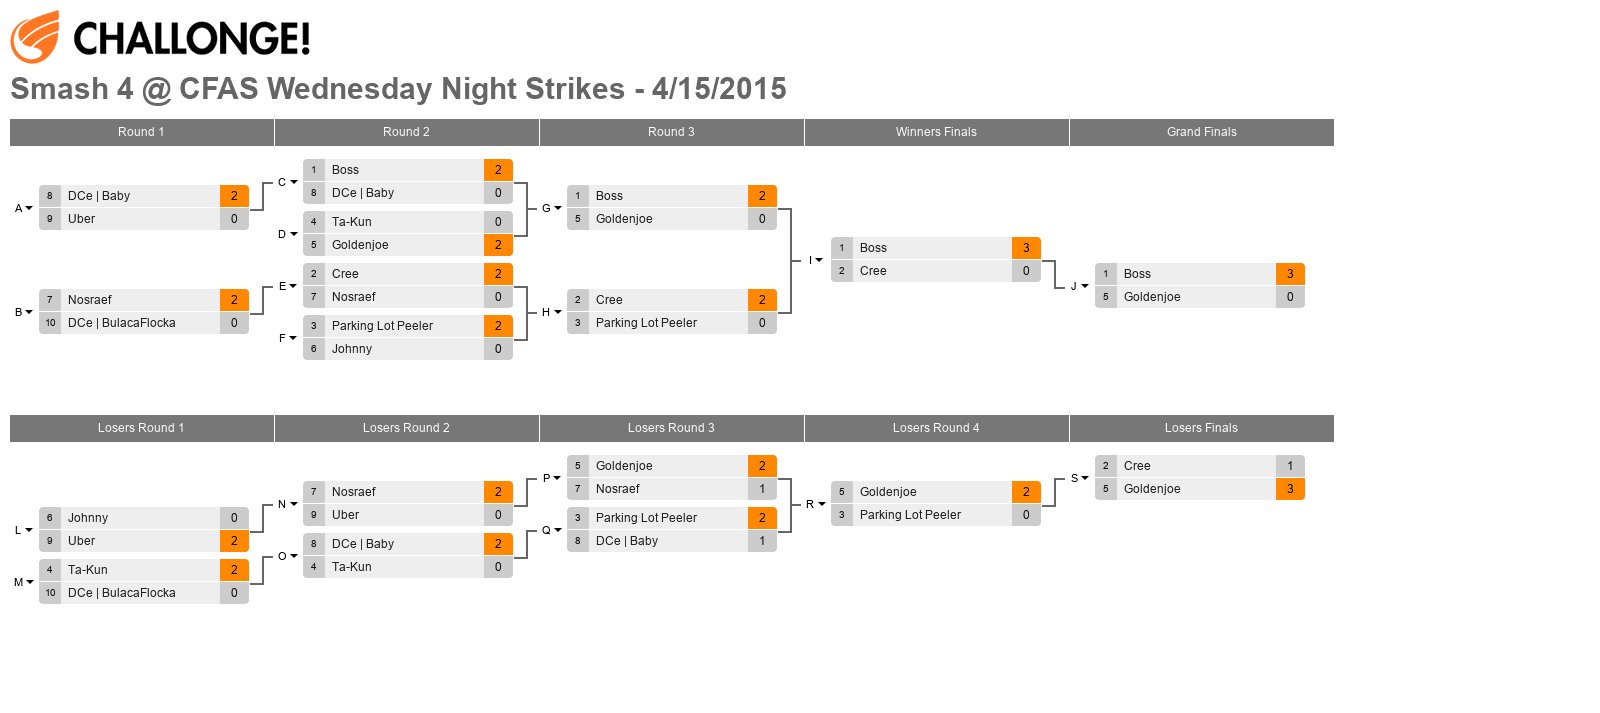 Smash 4 @ CFAS Wednesday Night Strikes - 4/15/2015